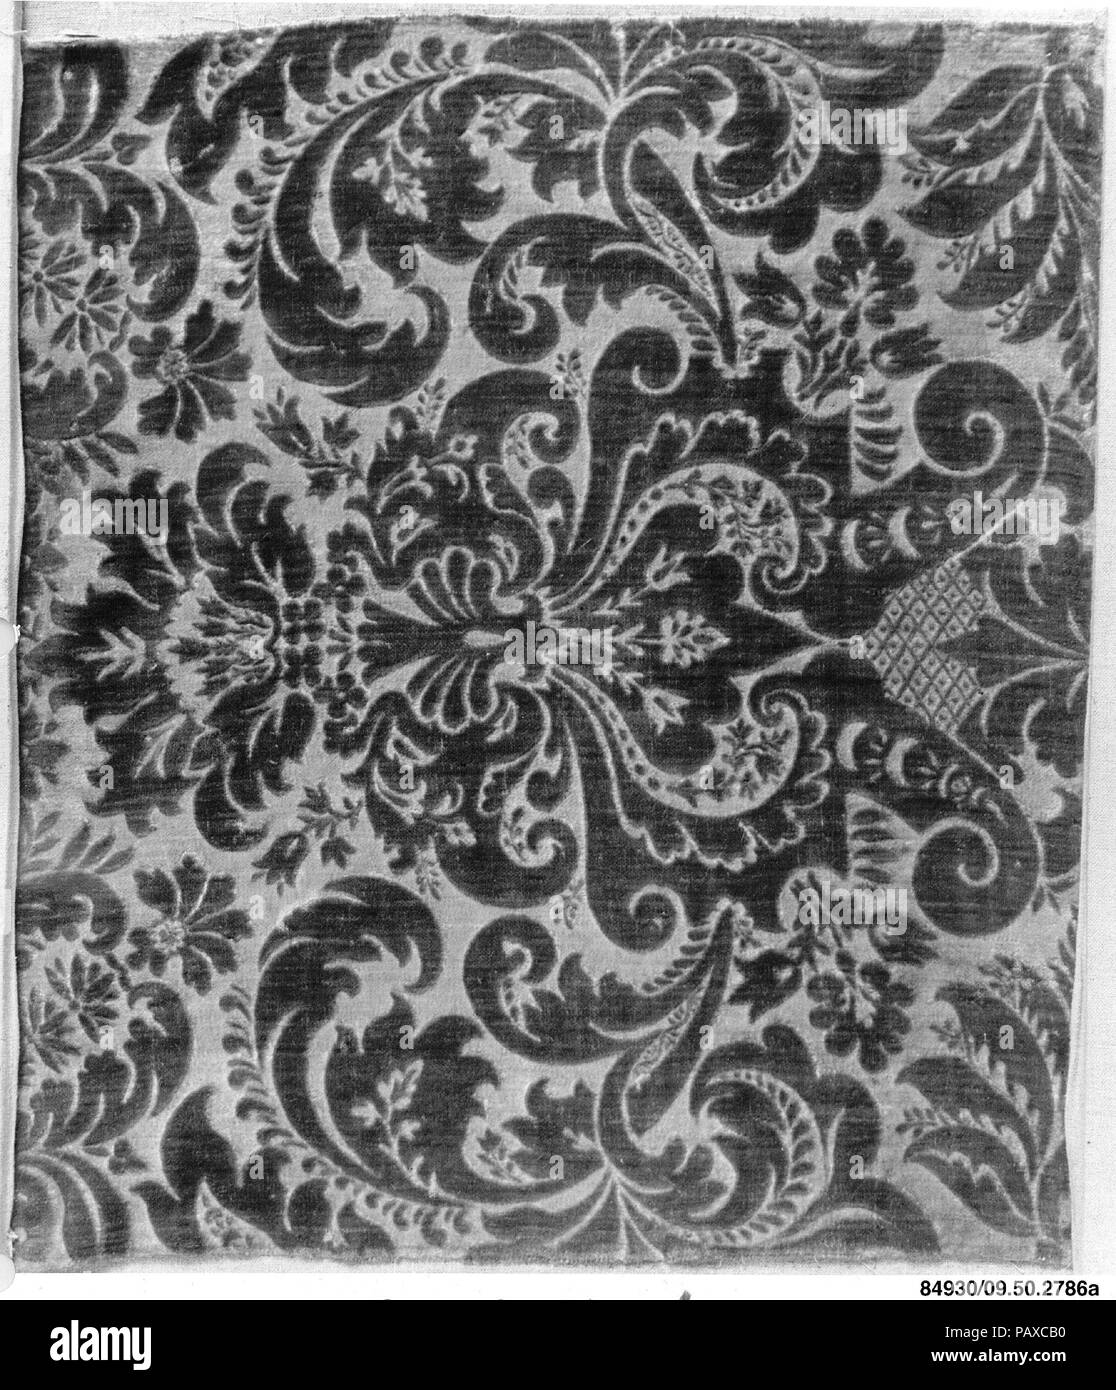 Pieza. Cultura: Flamenco (?). Dimensiones: 23 x 21 pulgadas (58,4 x 53,3 cm). Fecha: ca. 1710. Museo: Museo Metropolitano de Arte, Nueva York, Estados Unidos. Foto de stock